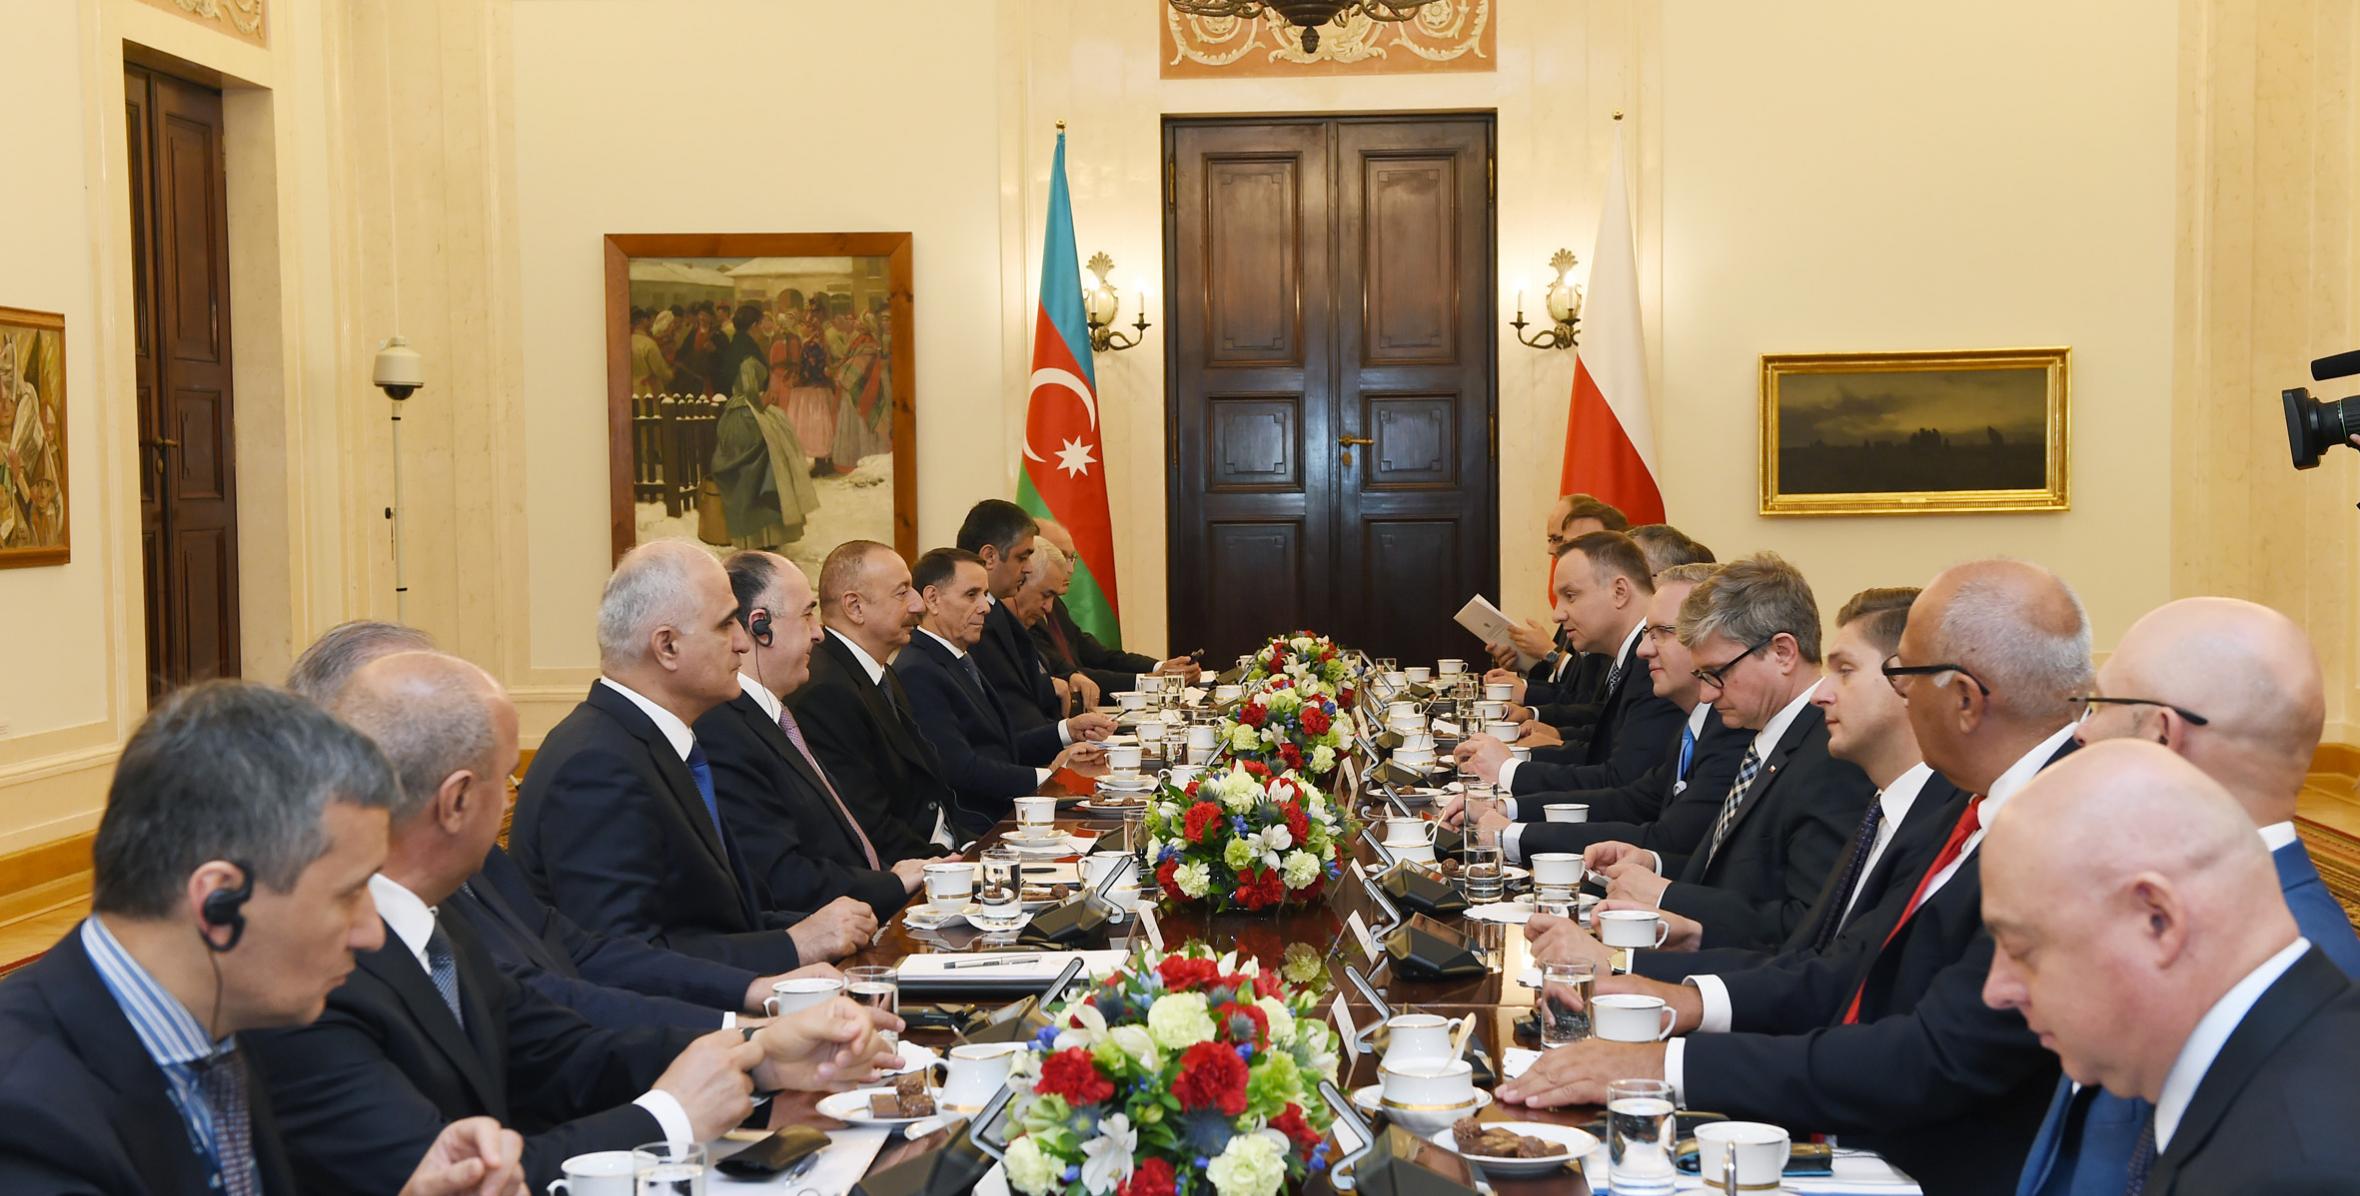 Состоялась встреча Ильхама Алиева и Президента Республики Польша Анджея Дуды в расширенном составе с участием делегаций